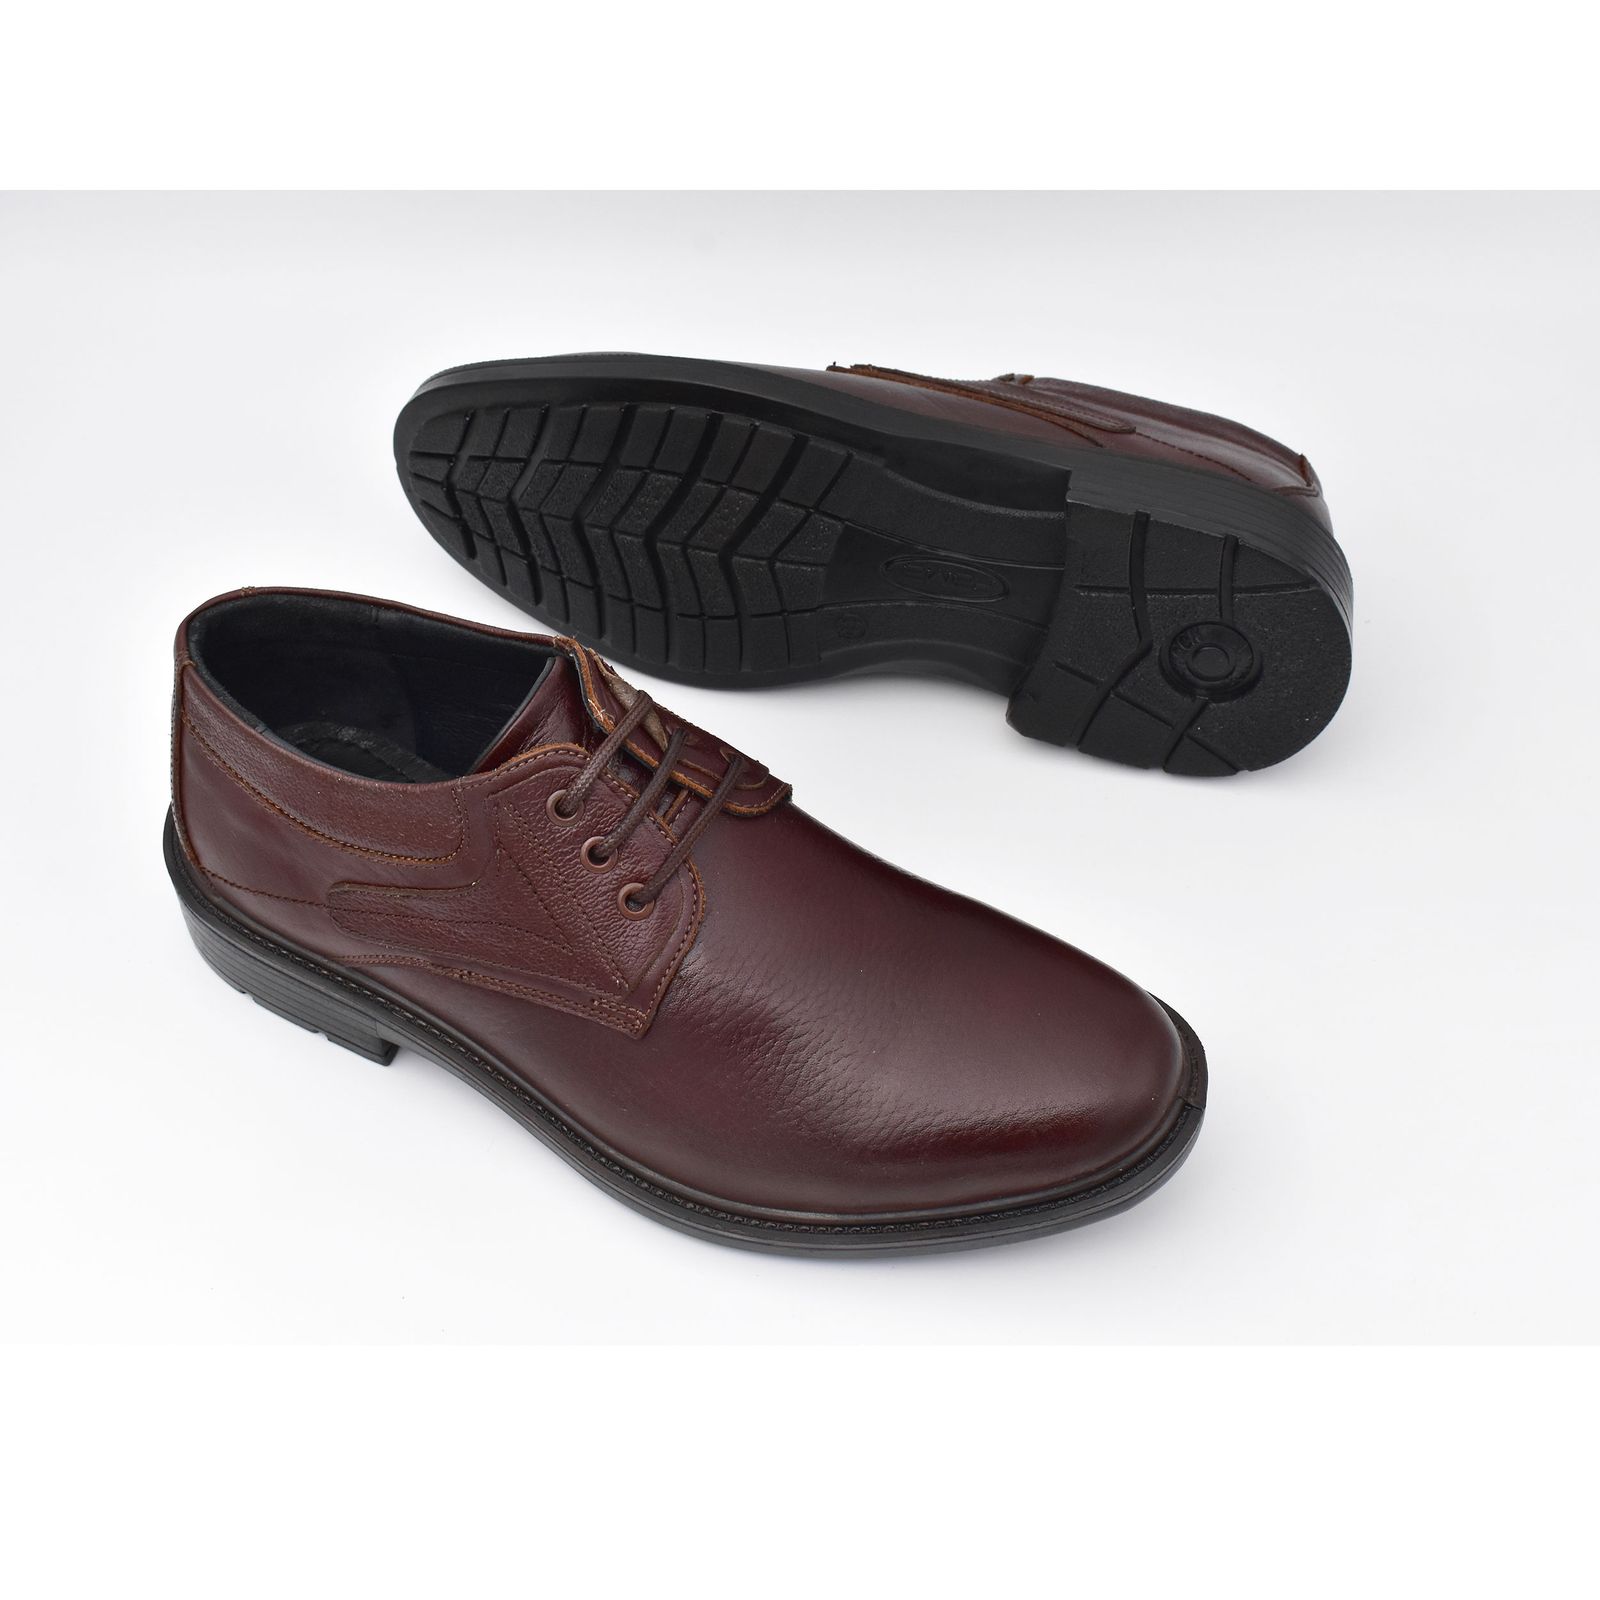 کفش مردانه پاما مدل Morano کد G1186 -  - 7